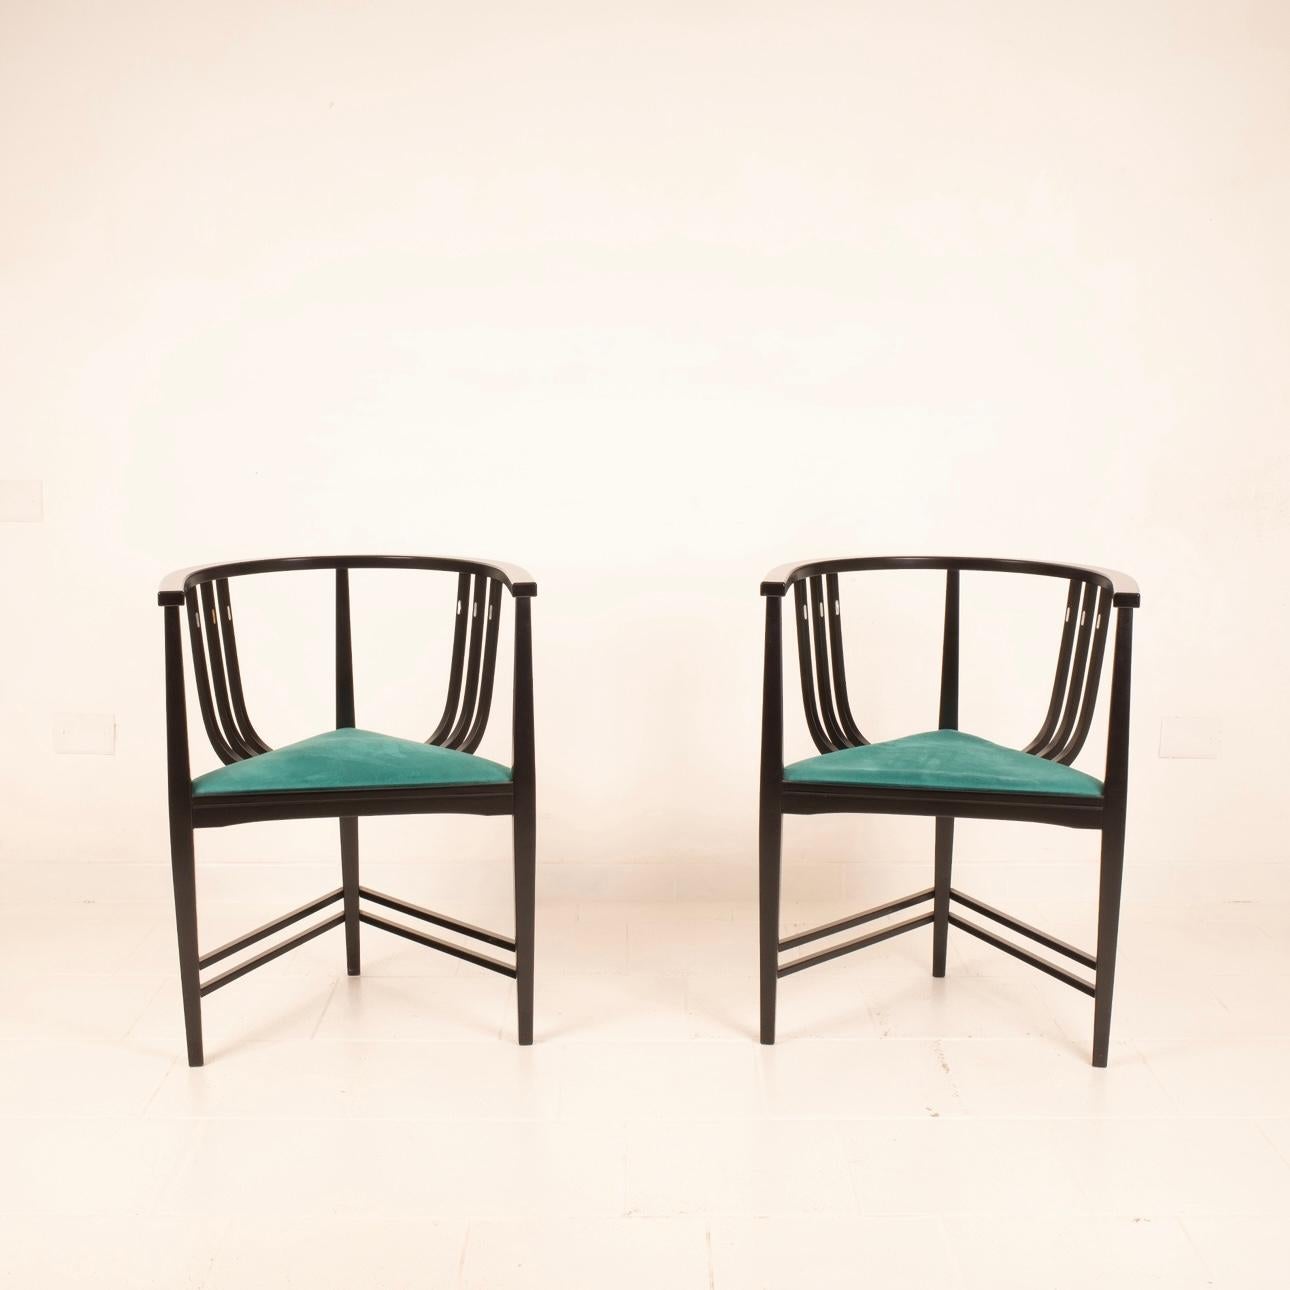 Stupenda coppia di sedie riedizione delle iconiche sedie Liberty del Maestro Ernest Archibald Taylor.
Realizzate negli anni 80 in frassino nero con dettagli in intarsio di madreperla, con tre gambe e seduta triangolare, sono un omaggio ad uno dei